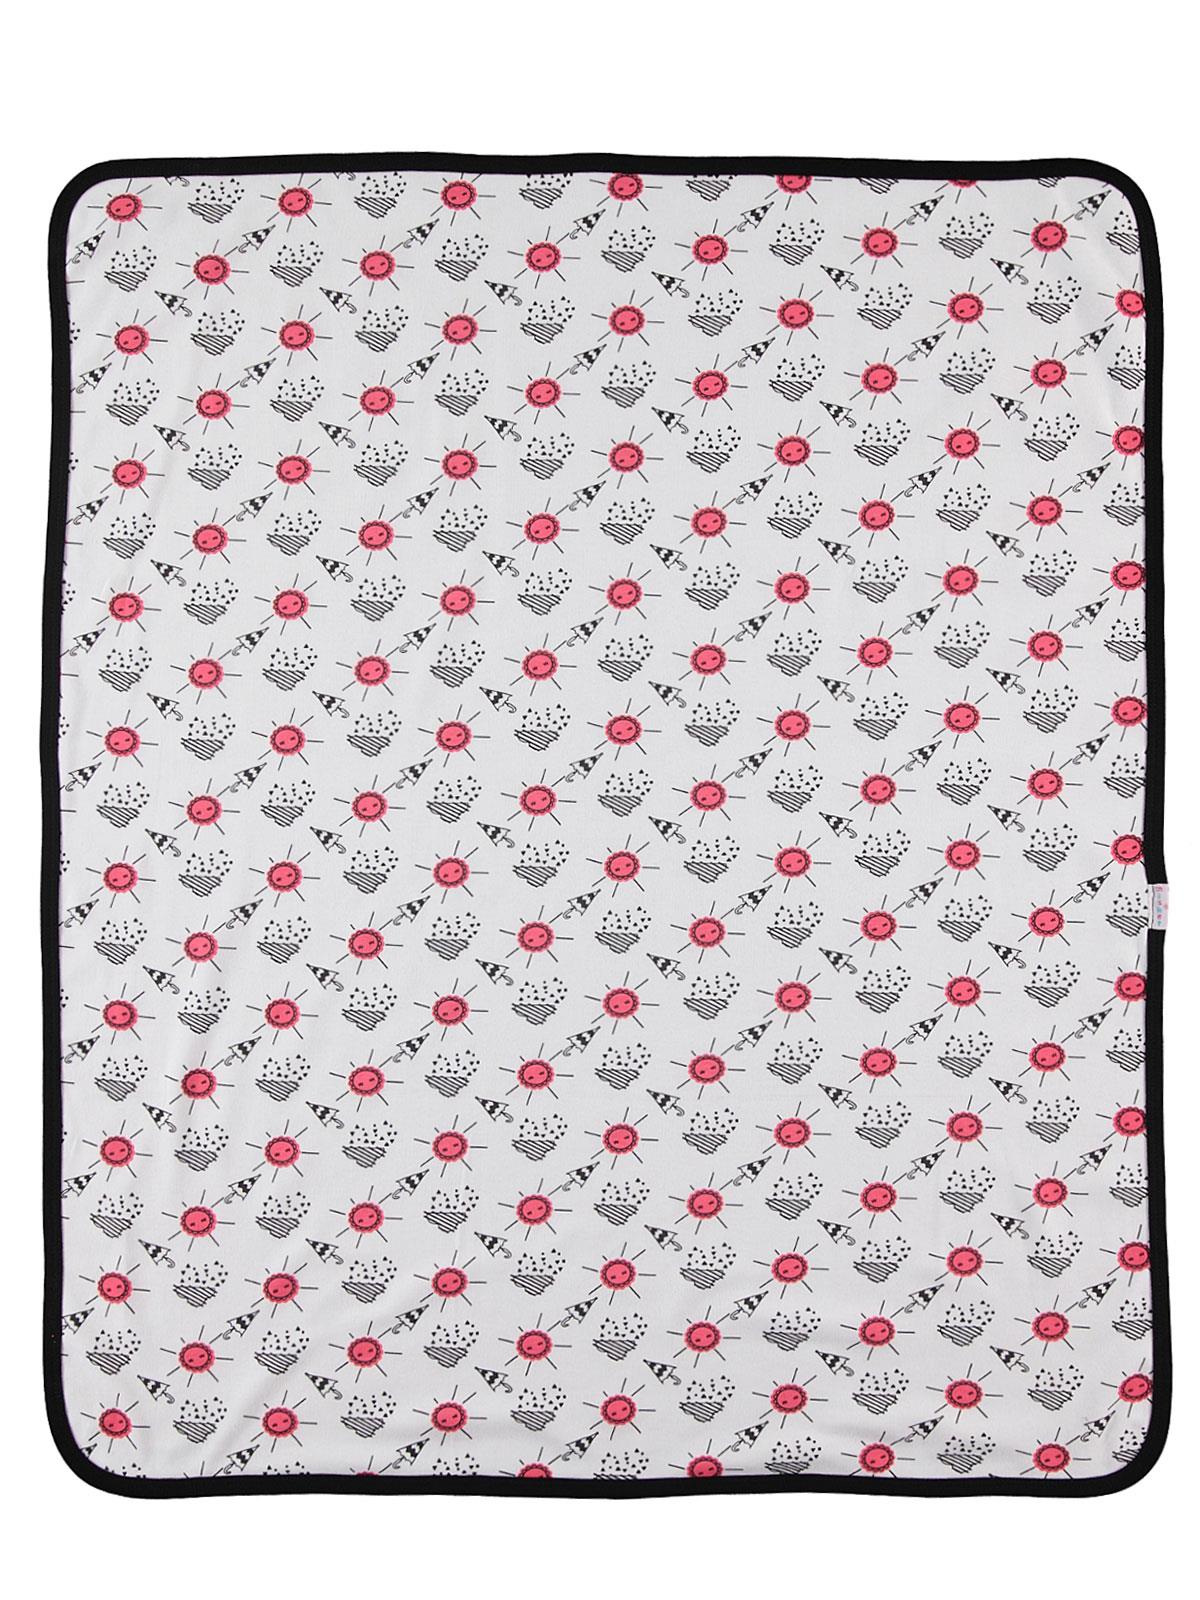 Misket Kız Bebek Çift Kat Battaniye 80x90 cm Narçiçeği